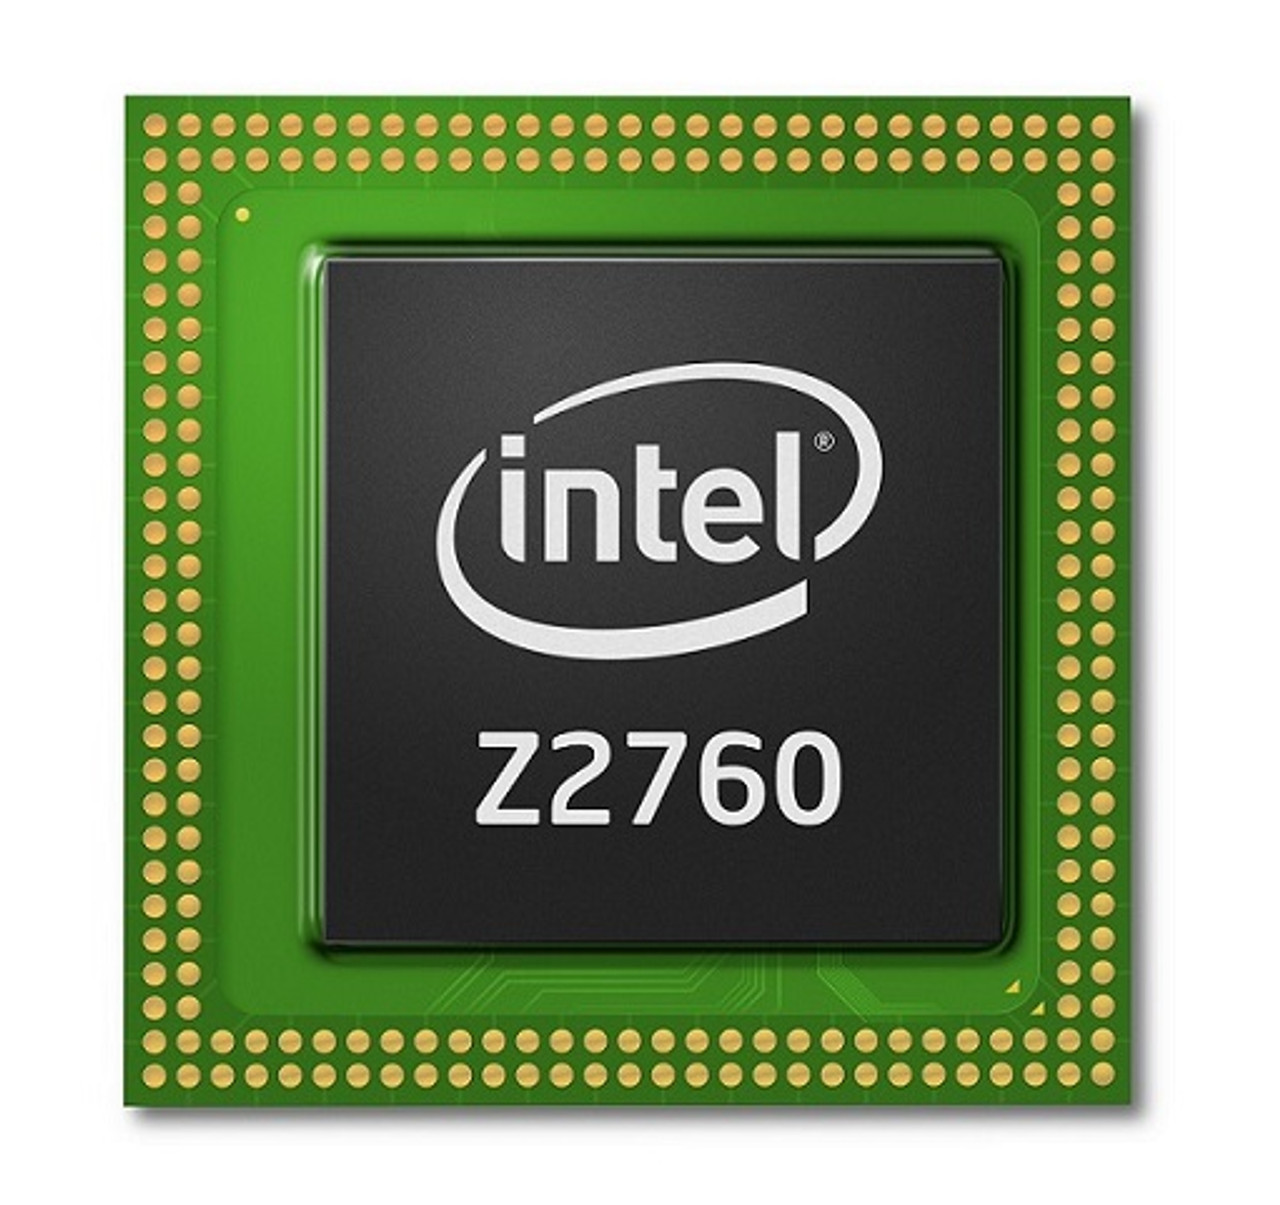 AC80566UE036DW - Intel Atom Z540 1.86GHz 533MHz FSB 512KB L2 Cache Socket PBGA441 Processor